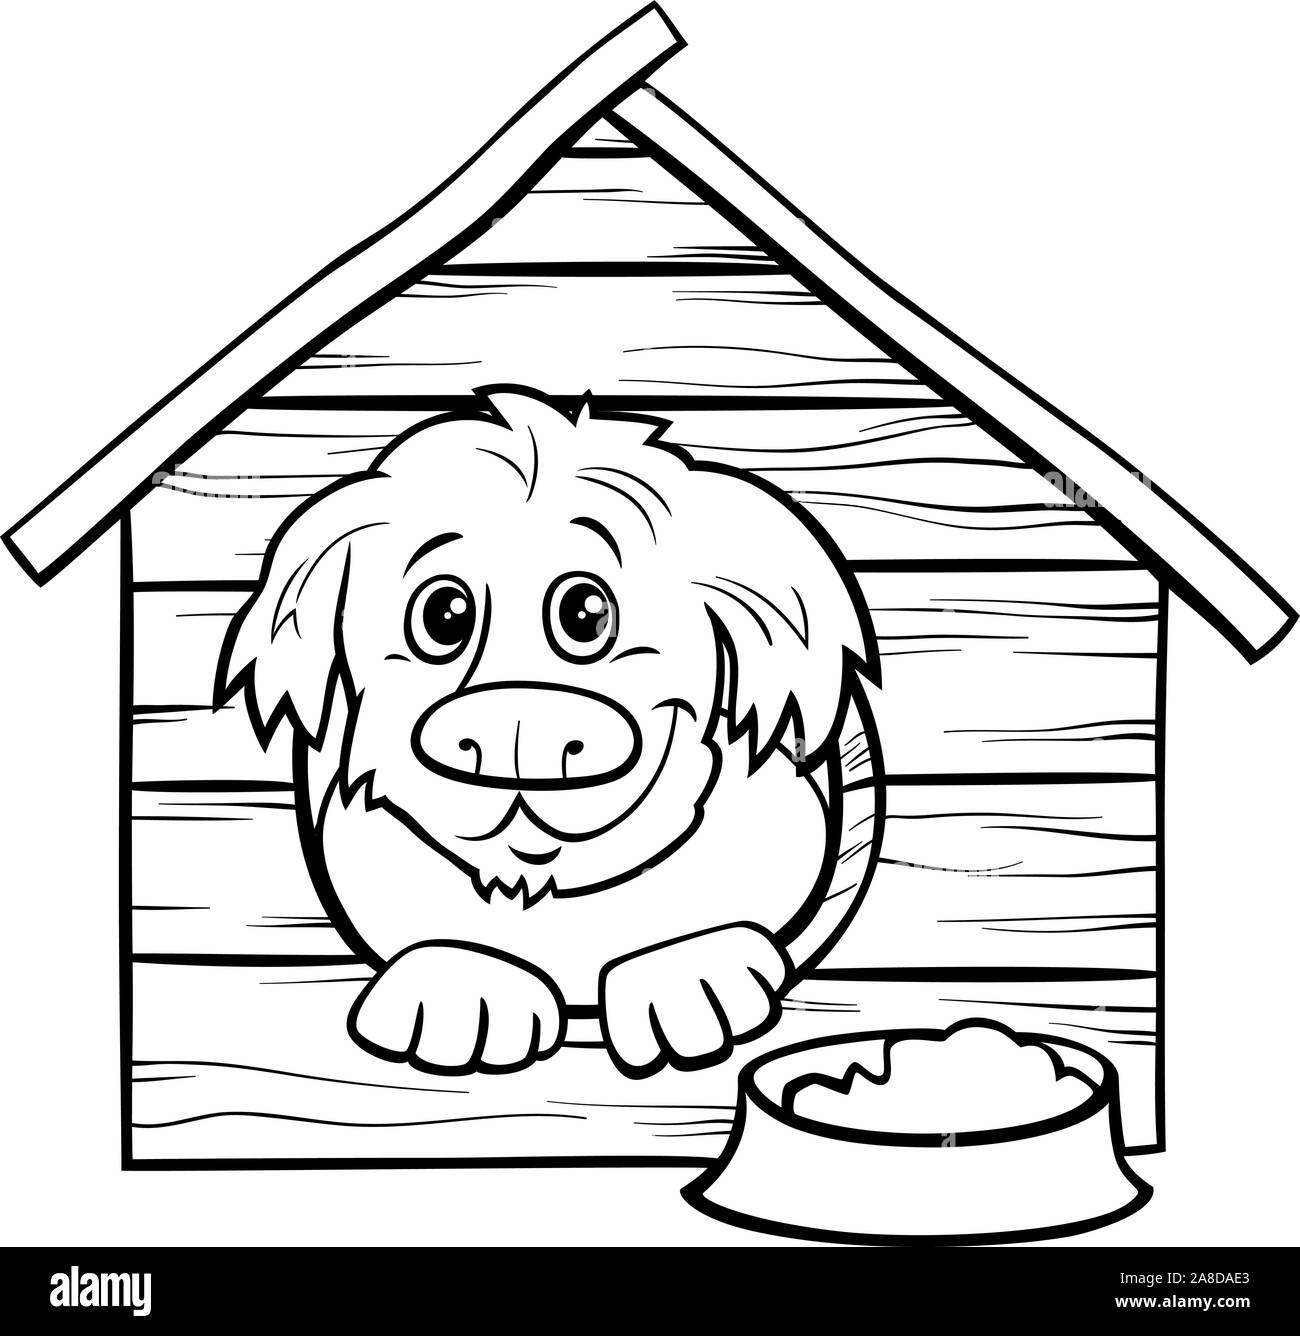 Cartoon noir et blanc Illustration de chien heureux Bande Dessinée personnage animal dans la page de coloriage chien Illustration de Vecteur